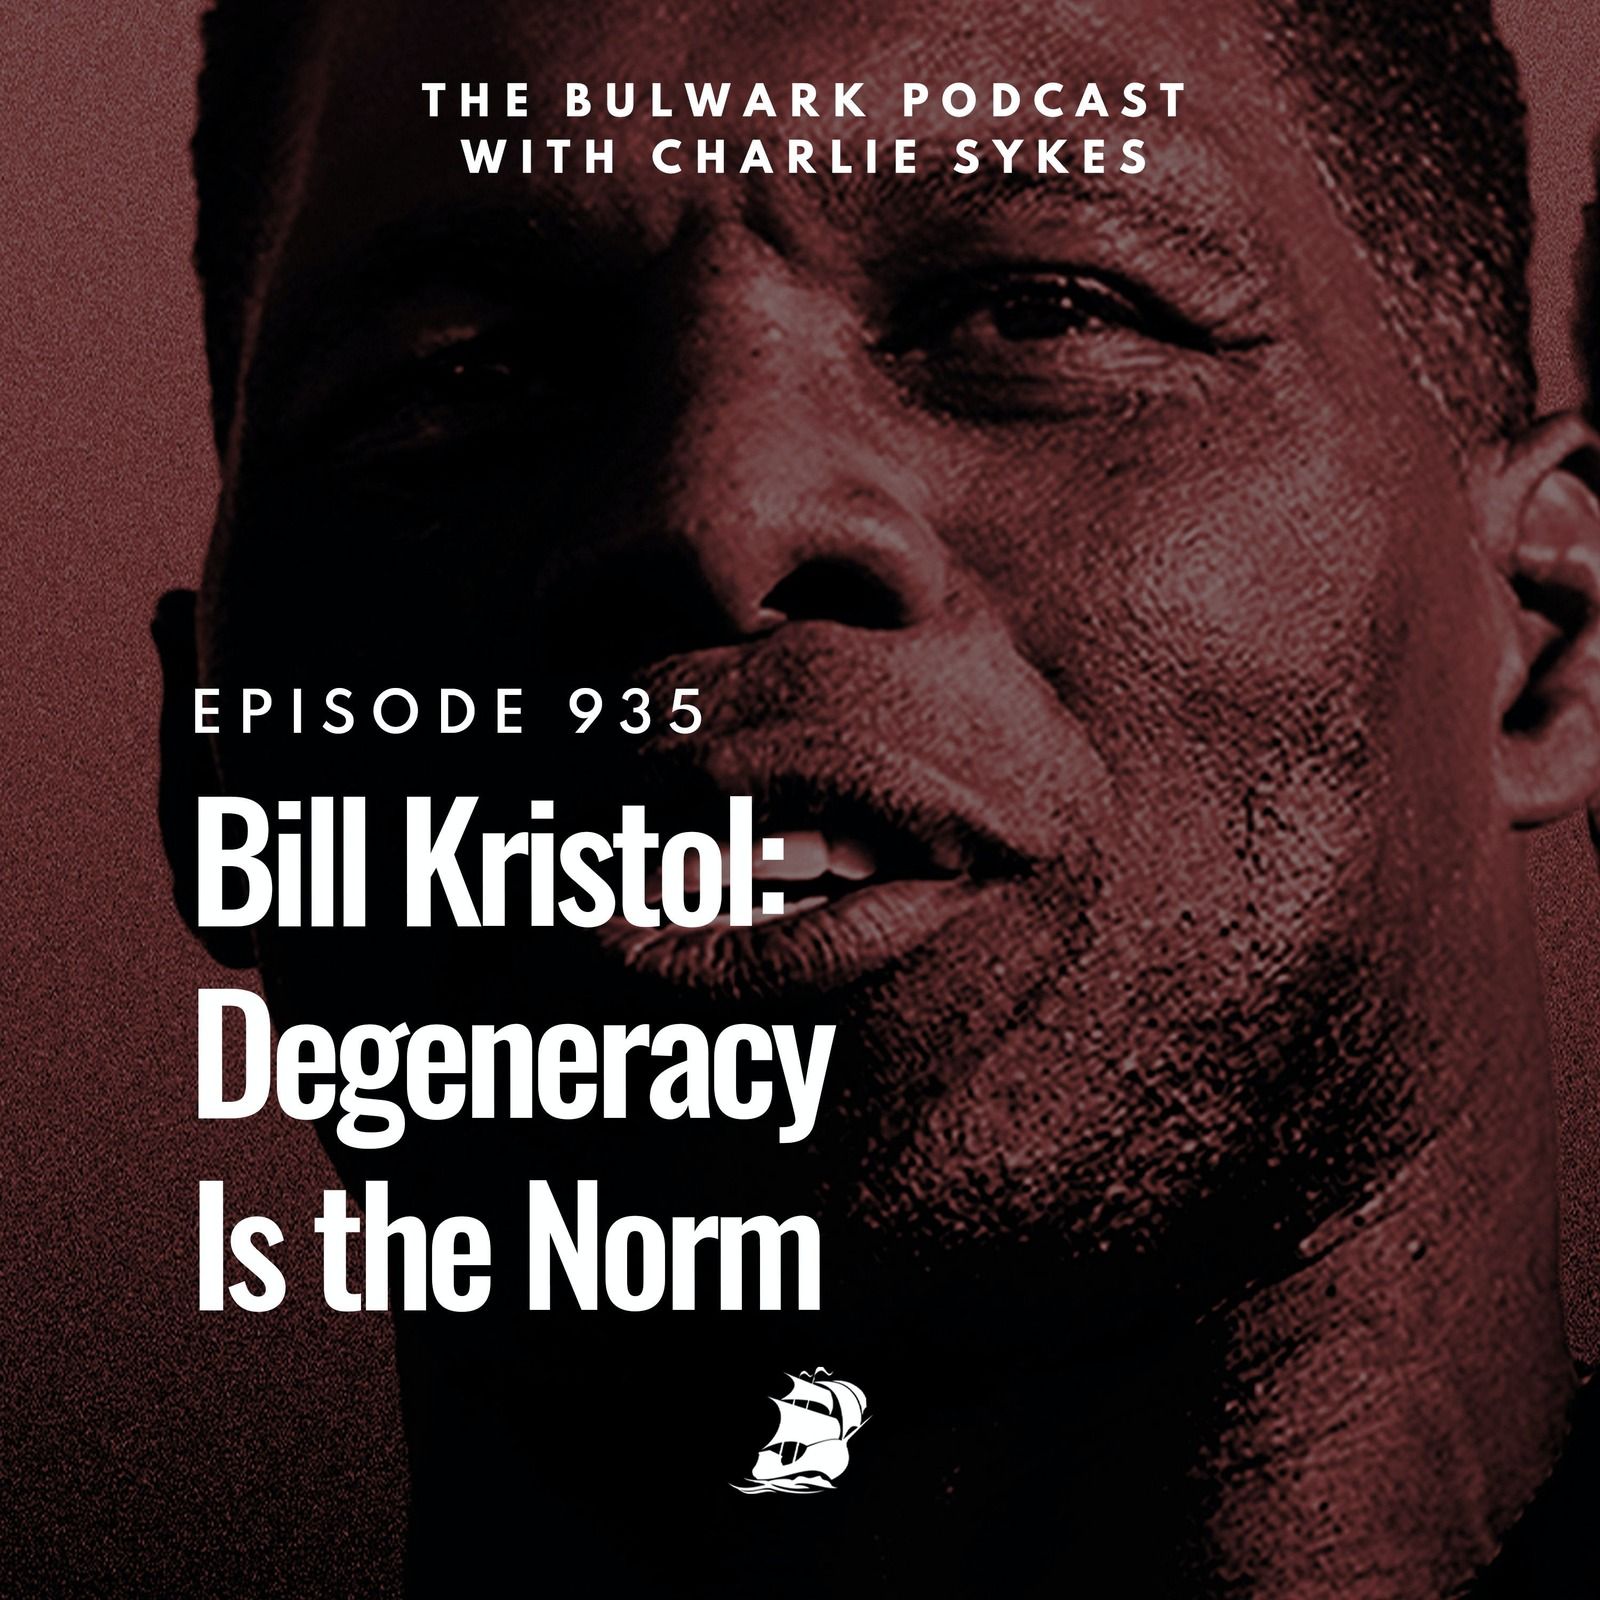 Bill Kristol: Degeneracy Is the Norm